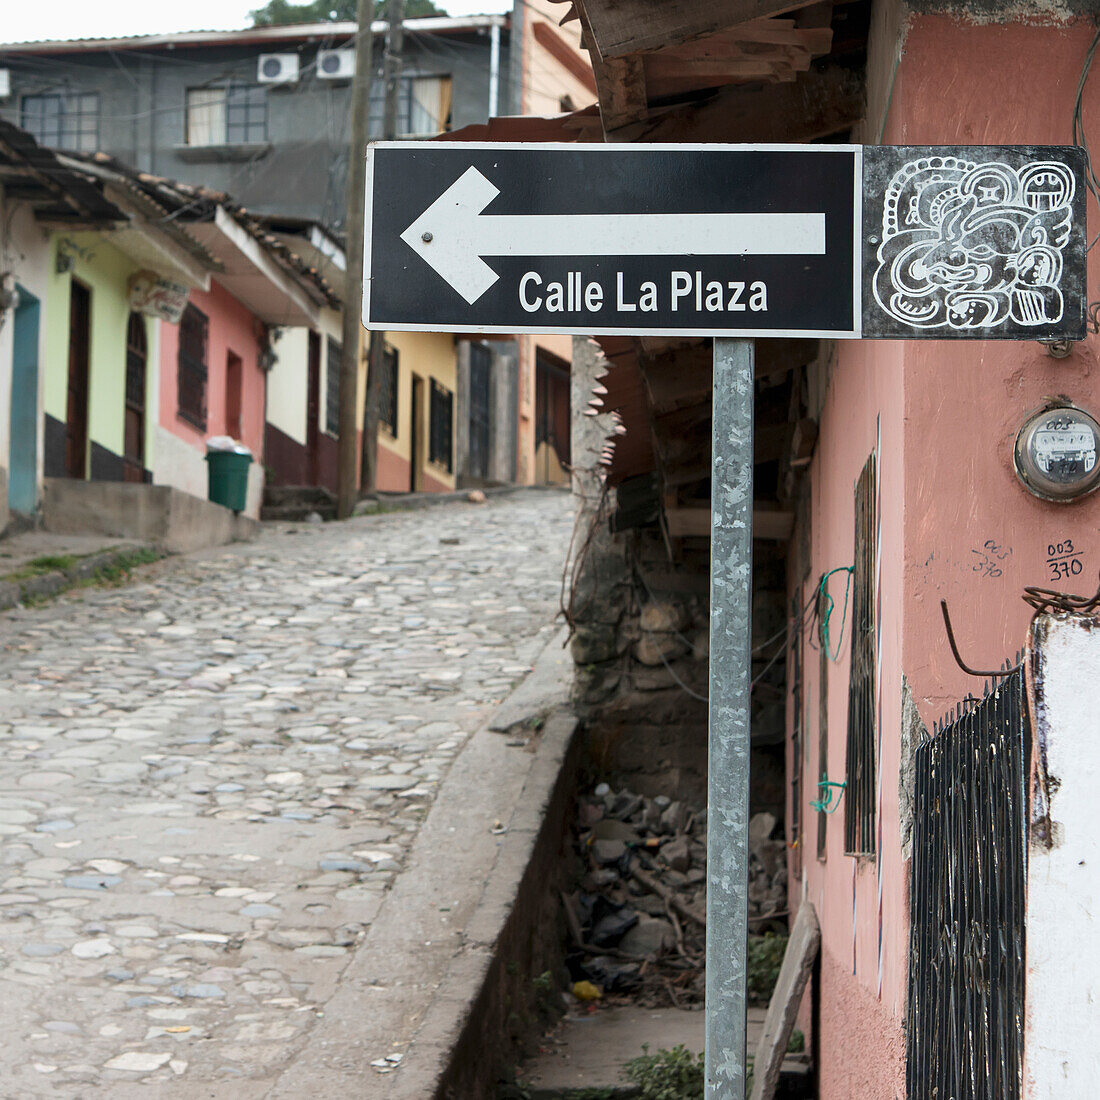 Ein Schild entlang einer Straße für Calle La Plaza; Copan, Honduras